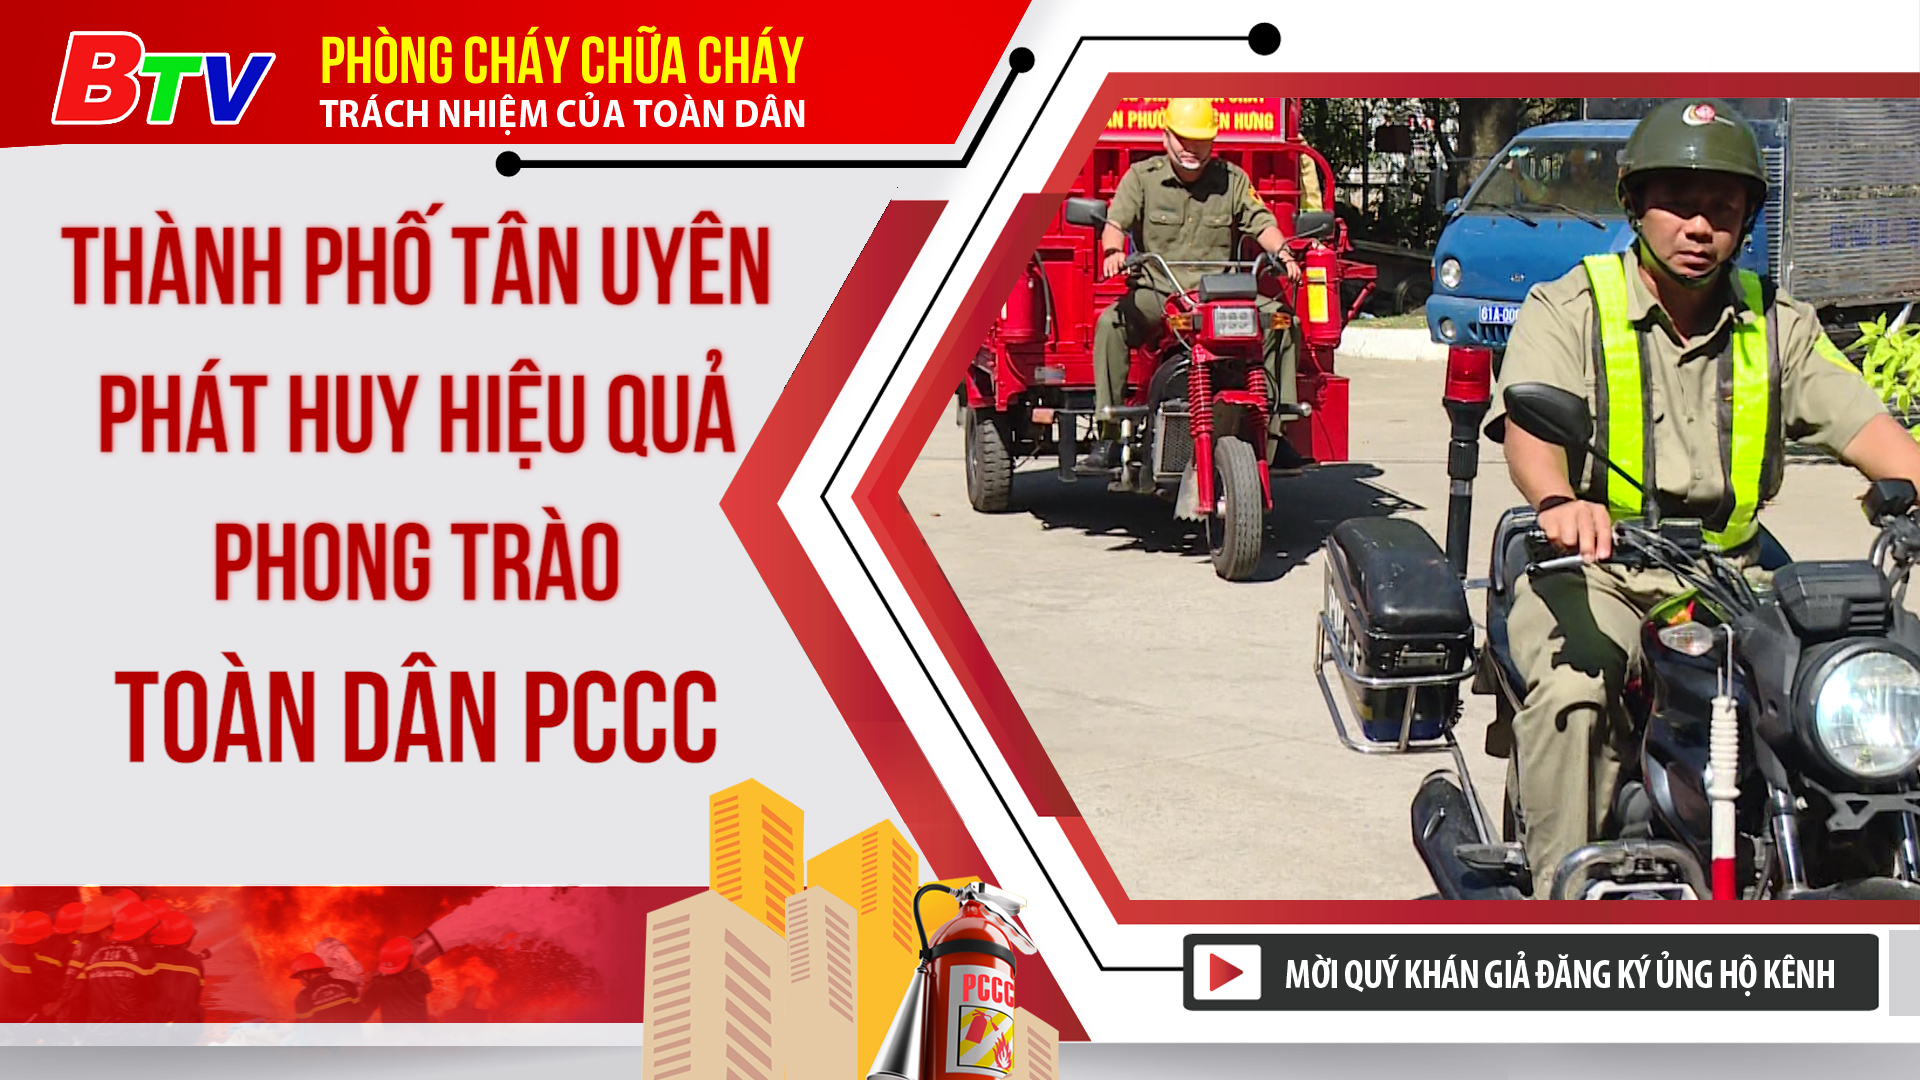 Thành phố Tân Uyên phát huy hiệu quả phong trào toàn dân PCCC 